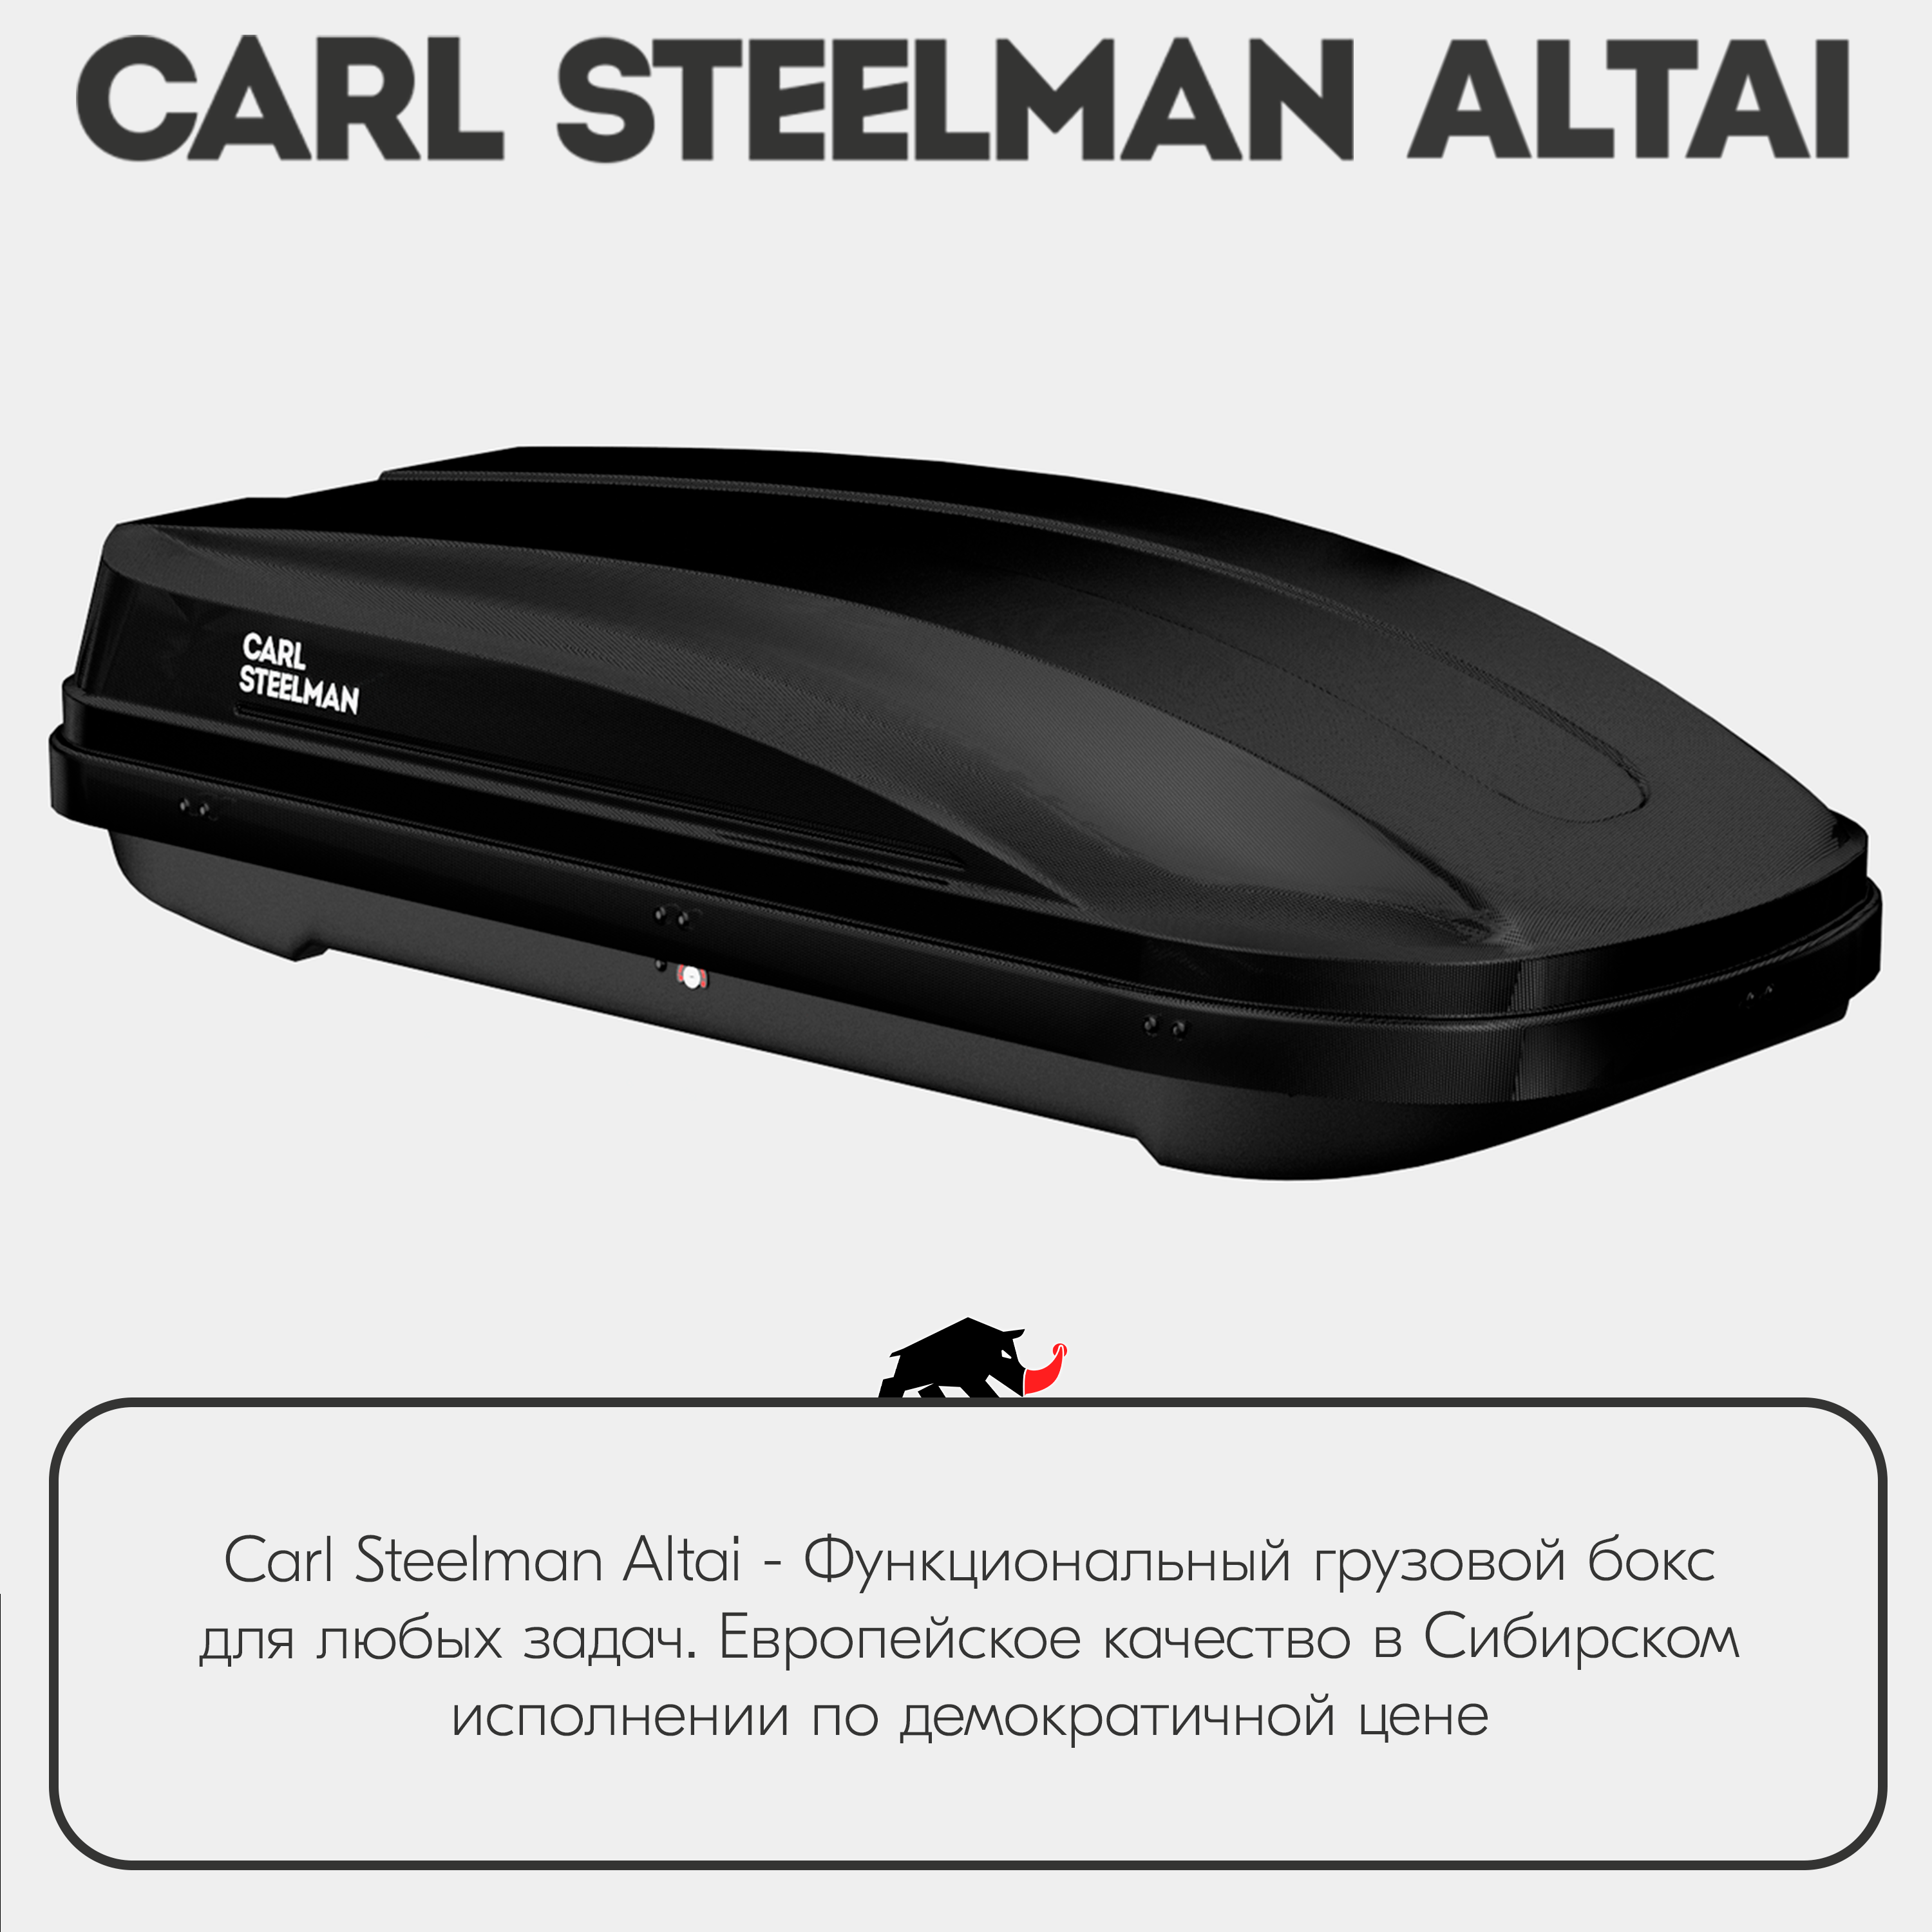 Багажный бокс на крышу Carl Steelman ALTAI 1970*700*400 черный "карбон" с односторонним открытием (об390л)